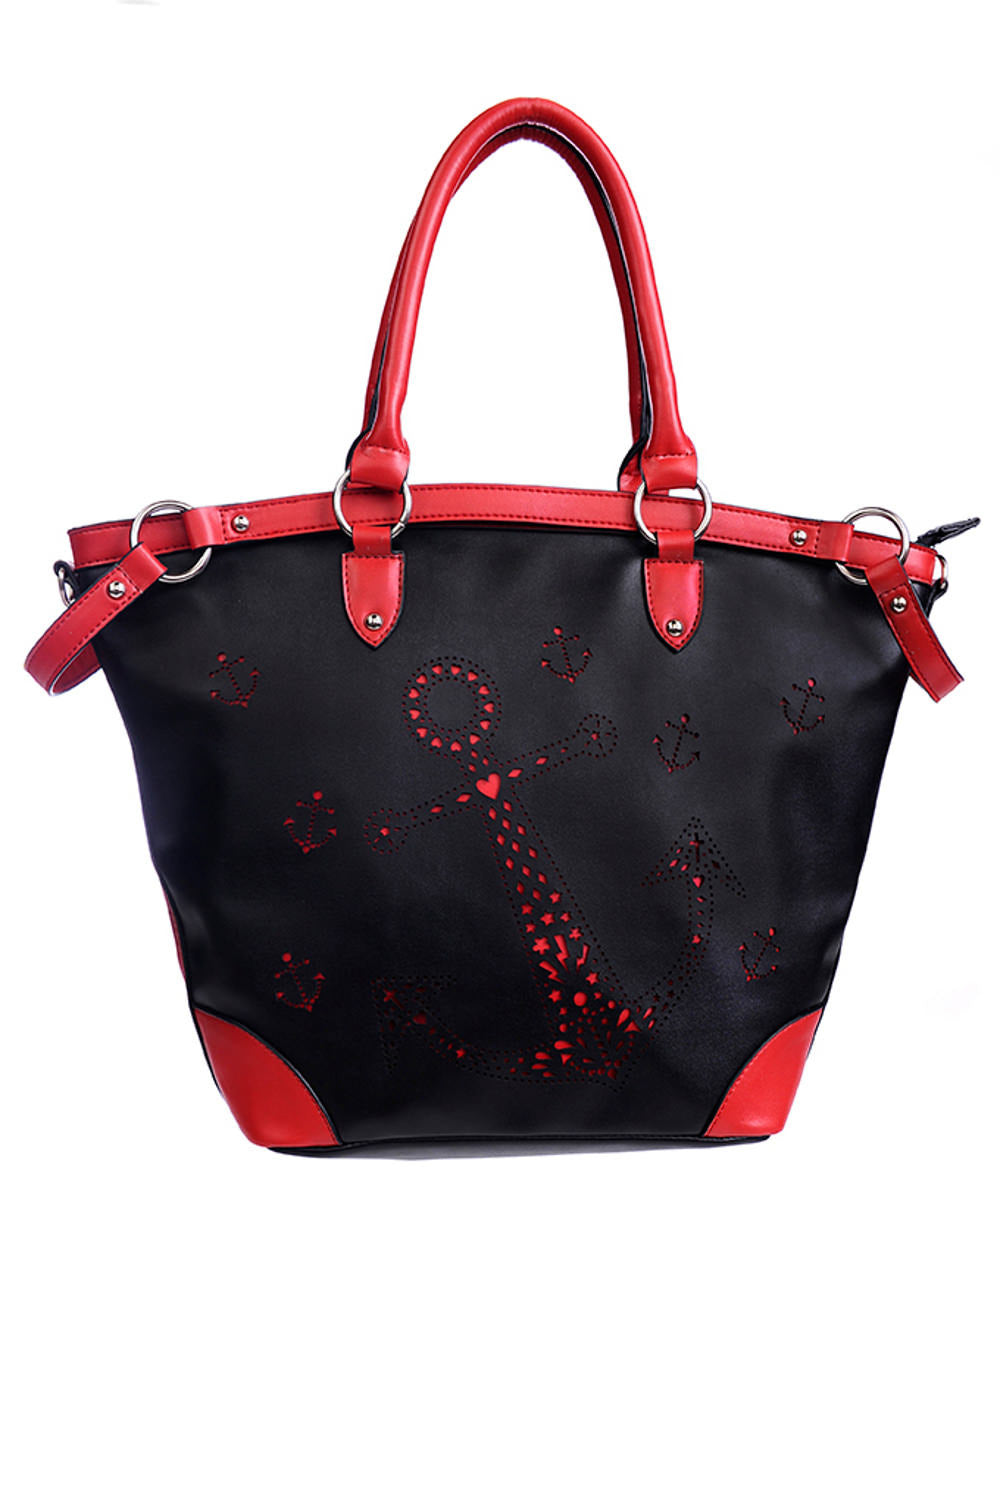 Banned Alternative Black Red Cute Anchor Shoulder Bag